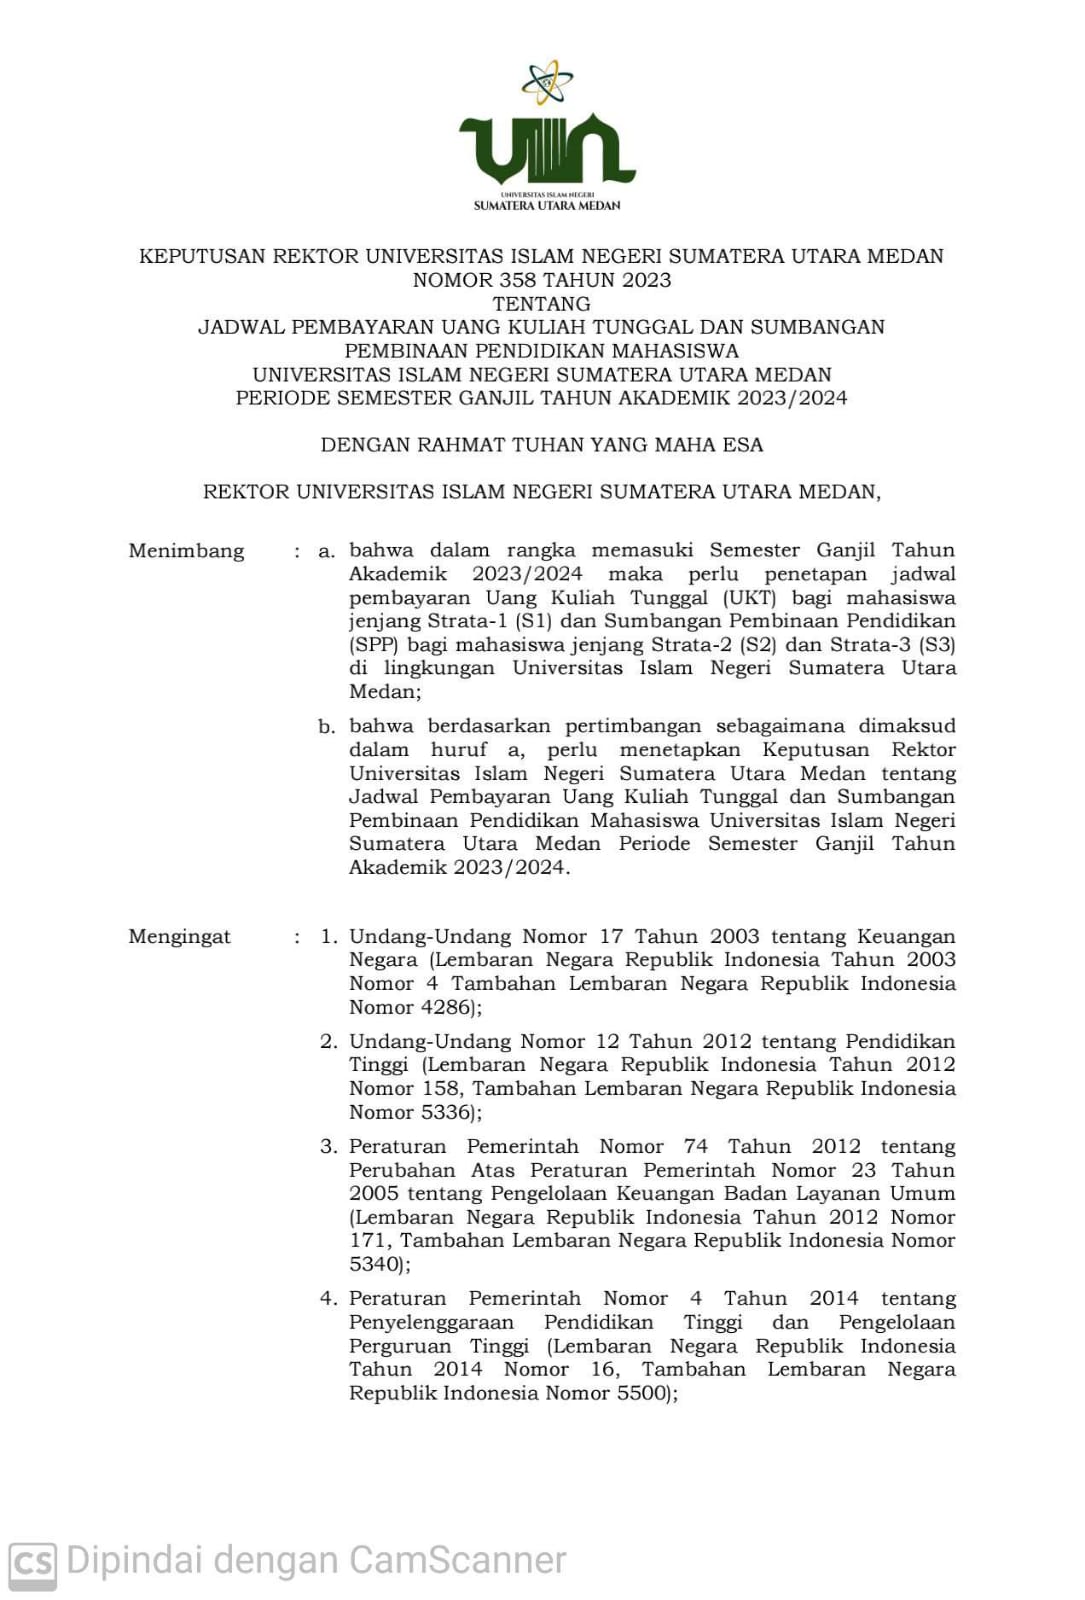 Jadwal Pembayaran Uang Kuliah Tunggal dan Sumbangan Pembinaan Pendidikan Mahasiswa  UIN SU Medan Periode Semester Ganjil T.A 2023/2024